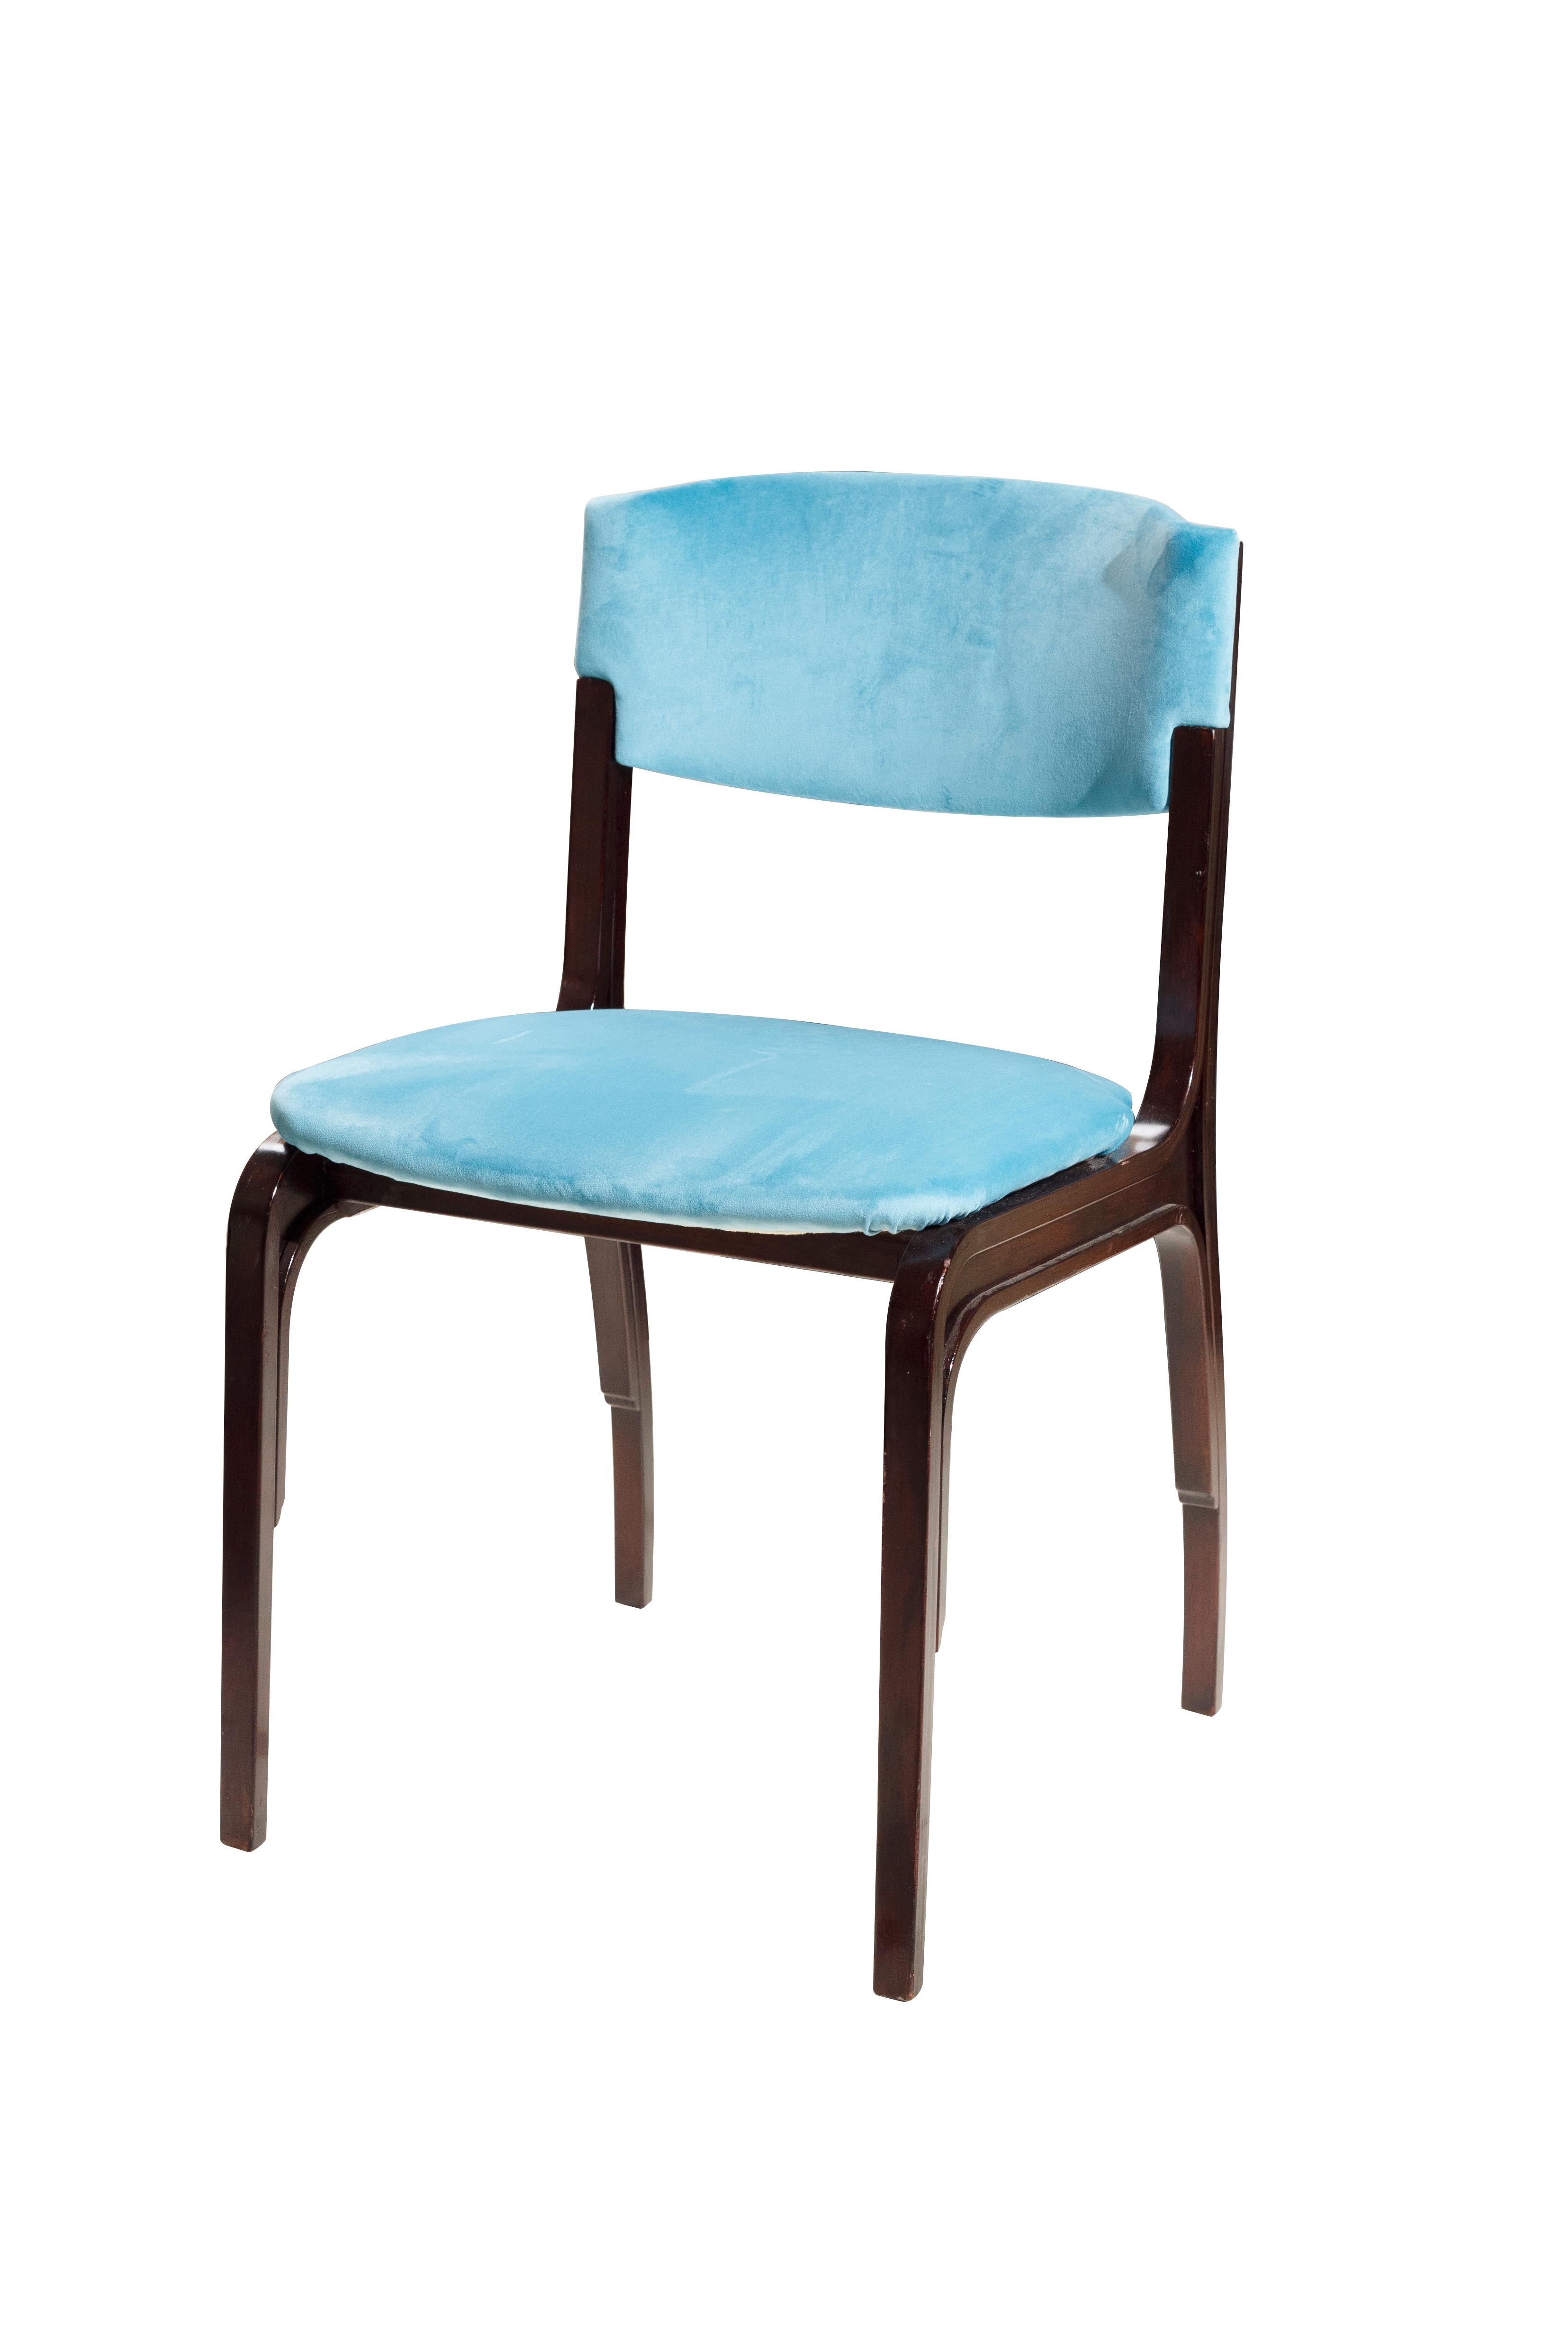 Gianfranco Frattini 5 sillas de terciopelo azul Mid-Century Modern. Gianfranco Frattini es un arquitecto y diseñador italiano que estudió en la escuela de Gio Ponti en Milán, siguiendo sus pasos. generación que formó el movimiento de diseño de los